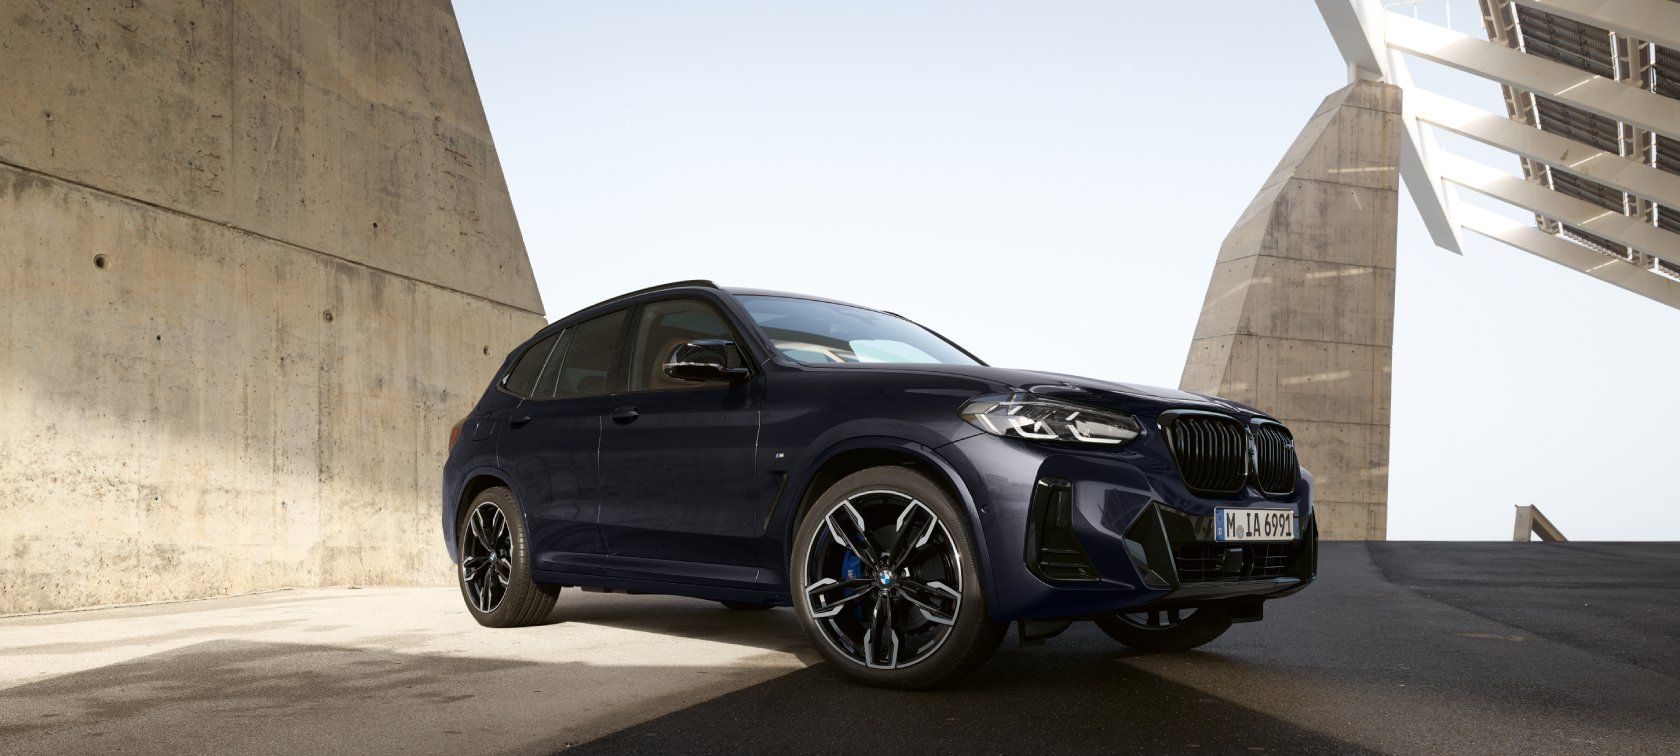 Lançamentos de carros elétricos da BMW no Brasil em 2022: Montadora terá 5 modelos à venda no país